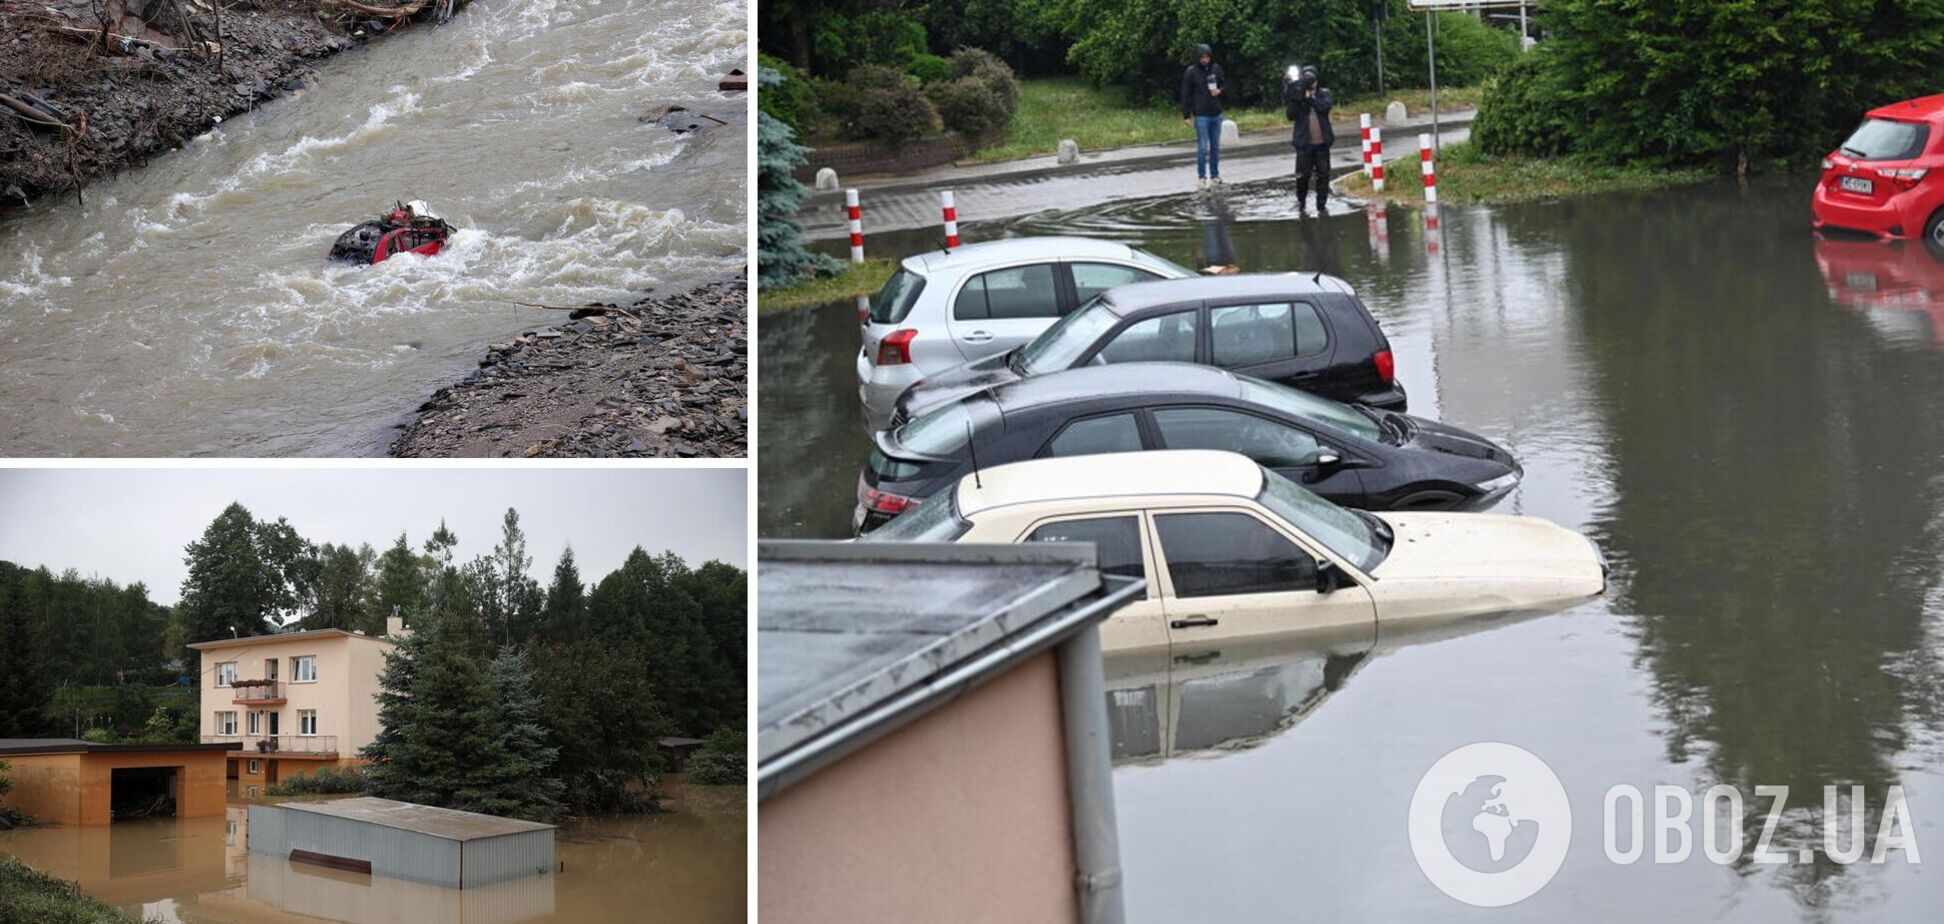 Наводнение в Польше: реки вышли из берегов, затоплены жилища. Видео